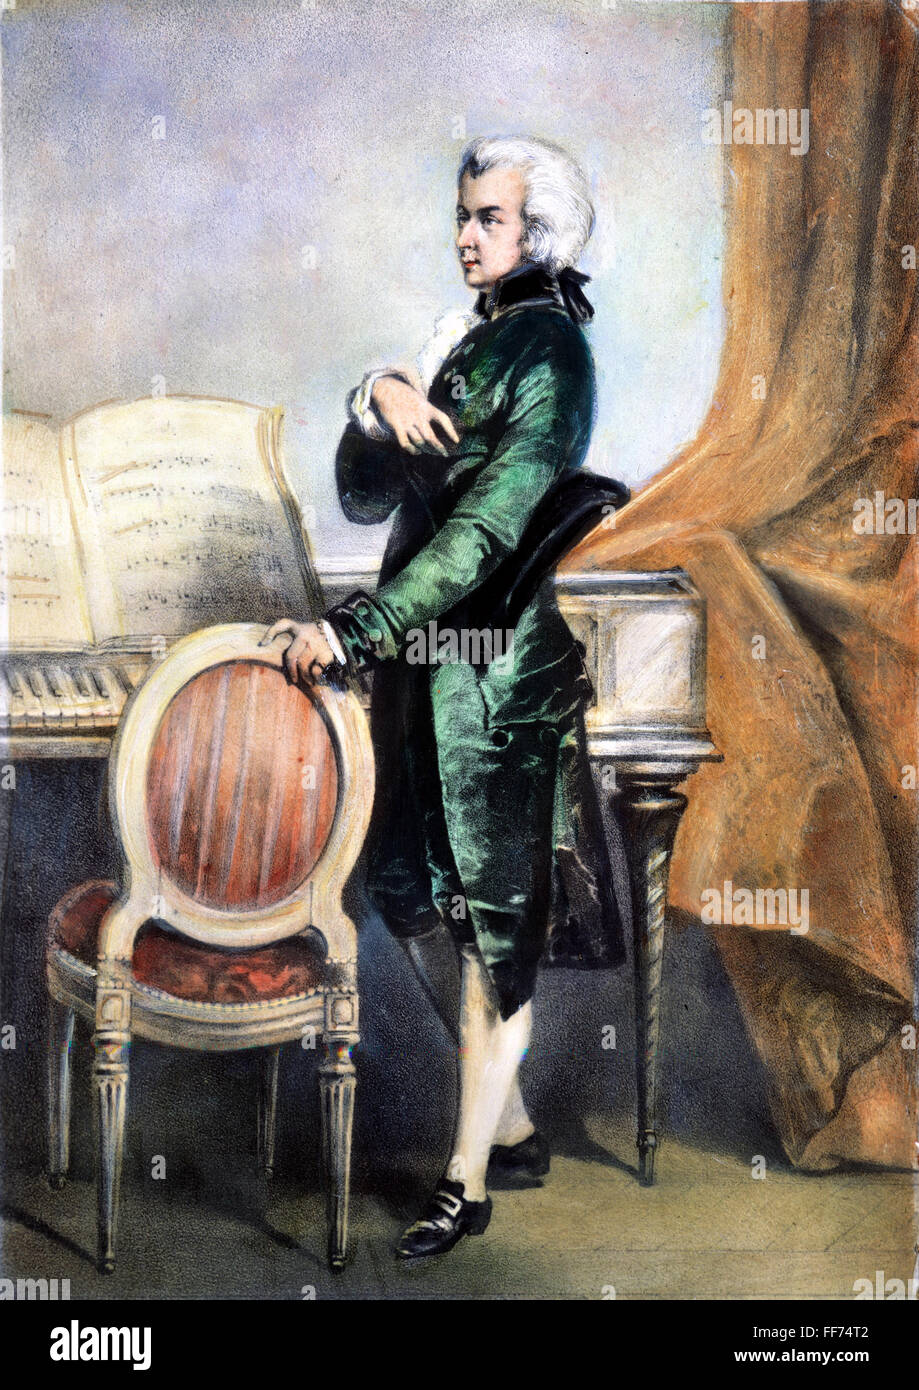 WOLFGANG AMADEUS MOZART /n(1756-1791). Österreichischer Komponist. Lithographie, 19. Jahrhundert. Stockfoto